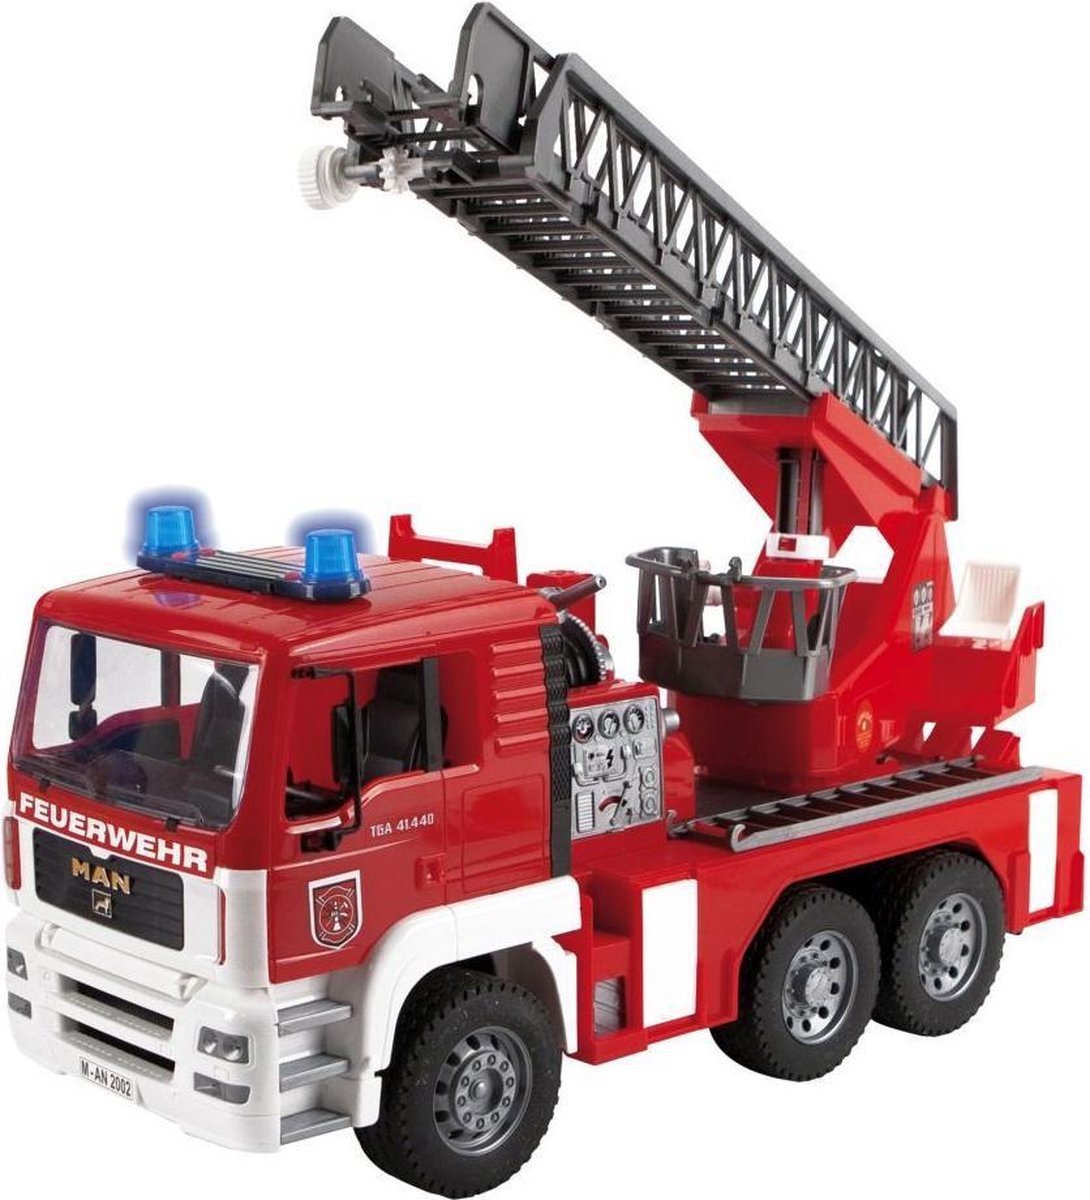 El mejor camión de bomberos en general - Camión de bomberos Bruder MAN con escalera giratoria